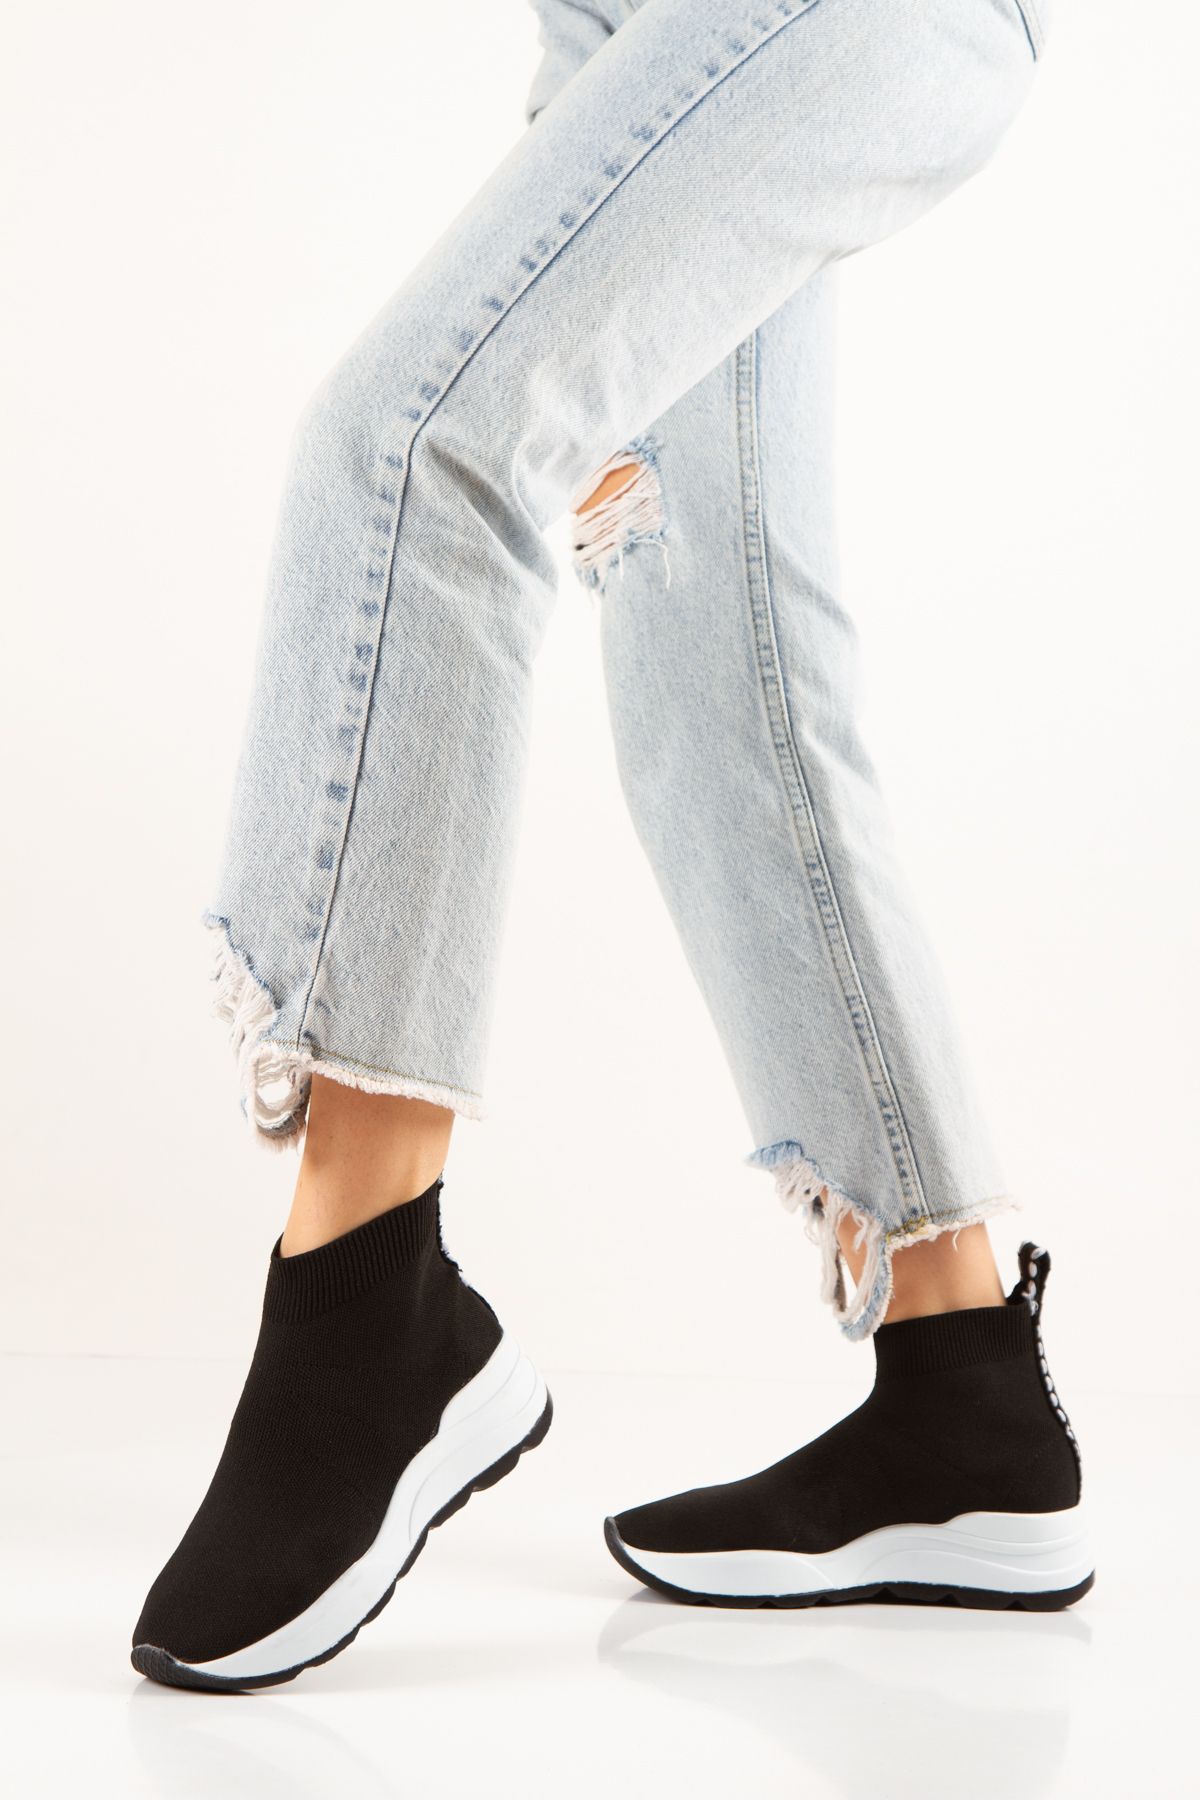 Pruva moda Siyah Bağcıksız Streç Bez Çorap Ayakkabı Sneaker Kadın Ve Erkek - Geniş Kalıp